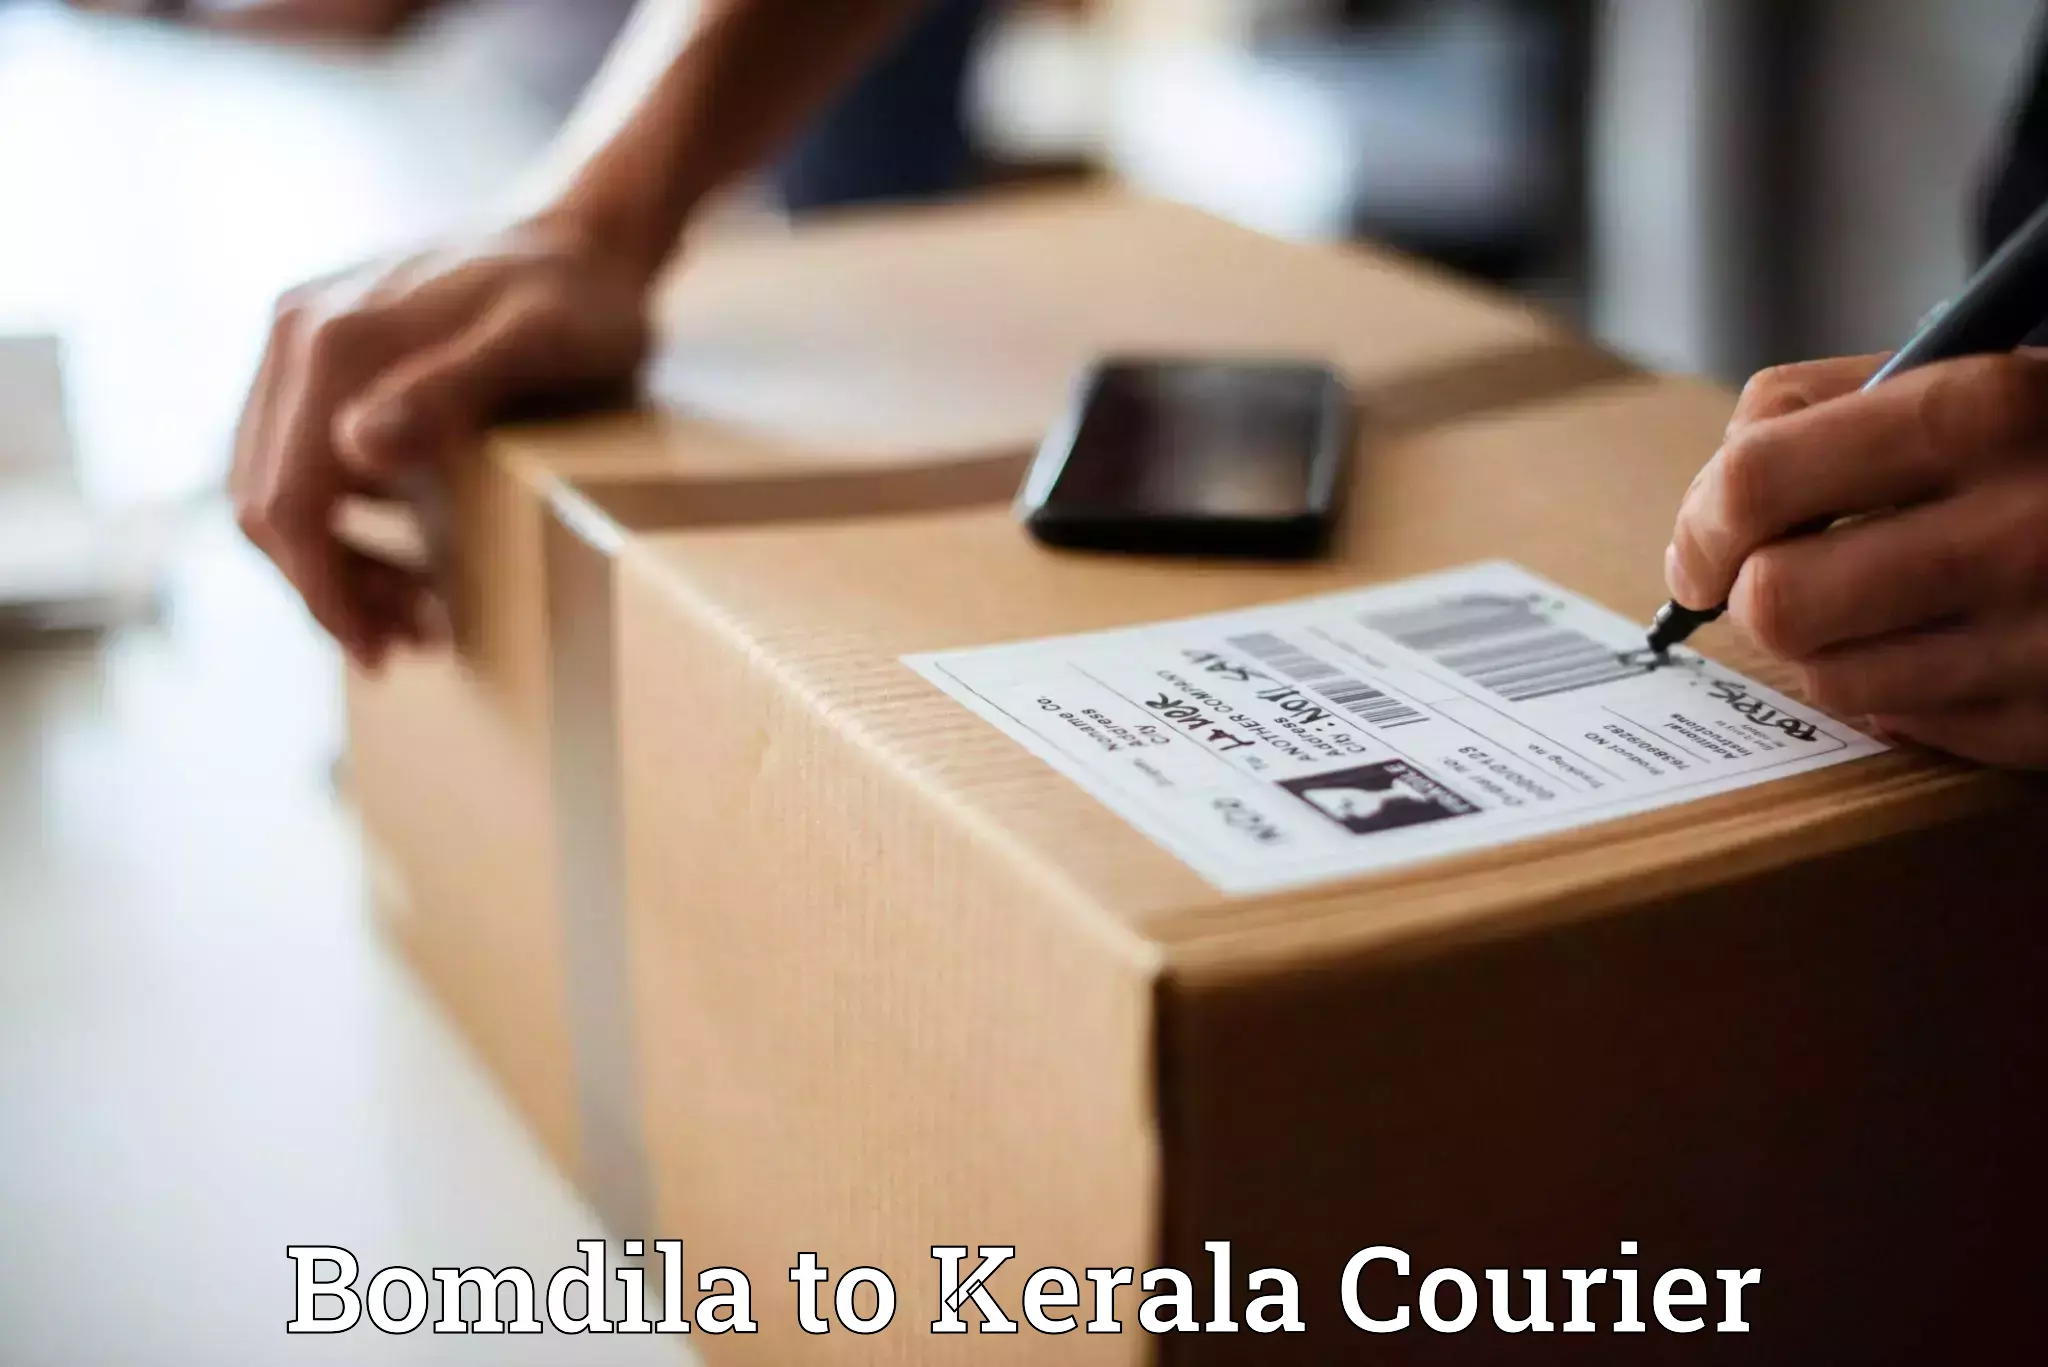 Pharmaceutical courier Bomdila to Kerala